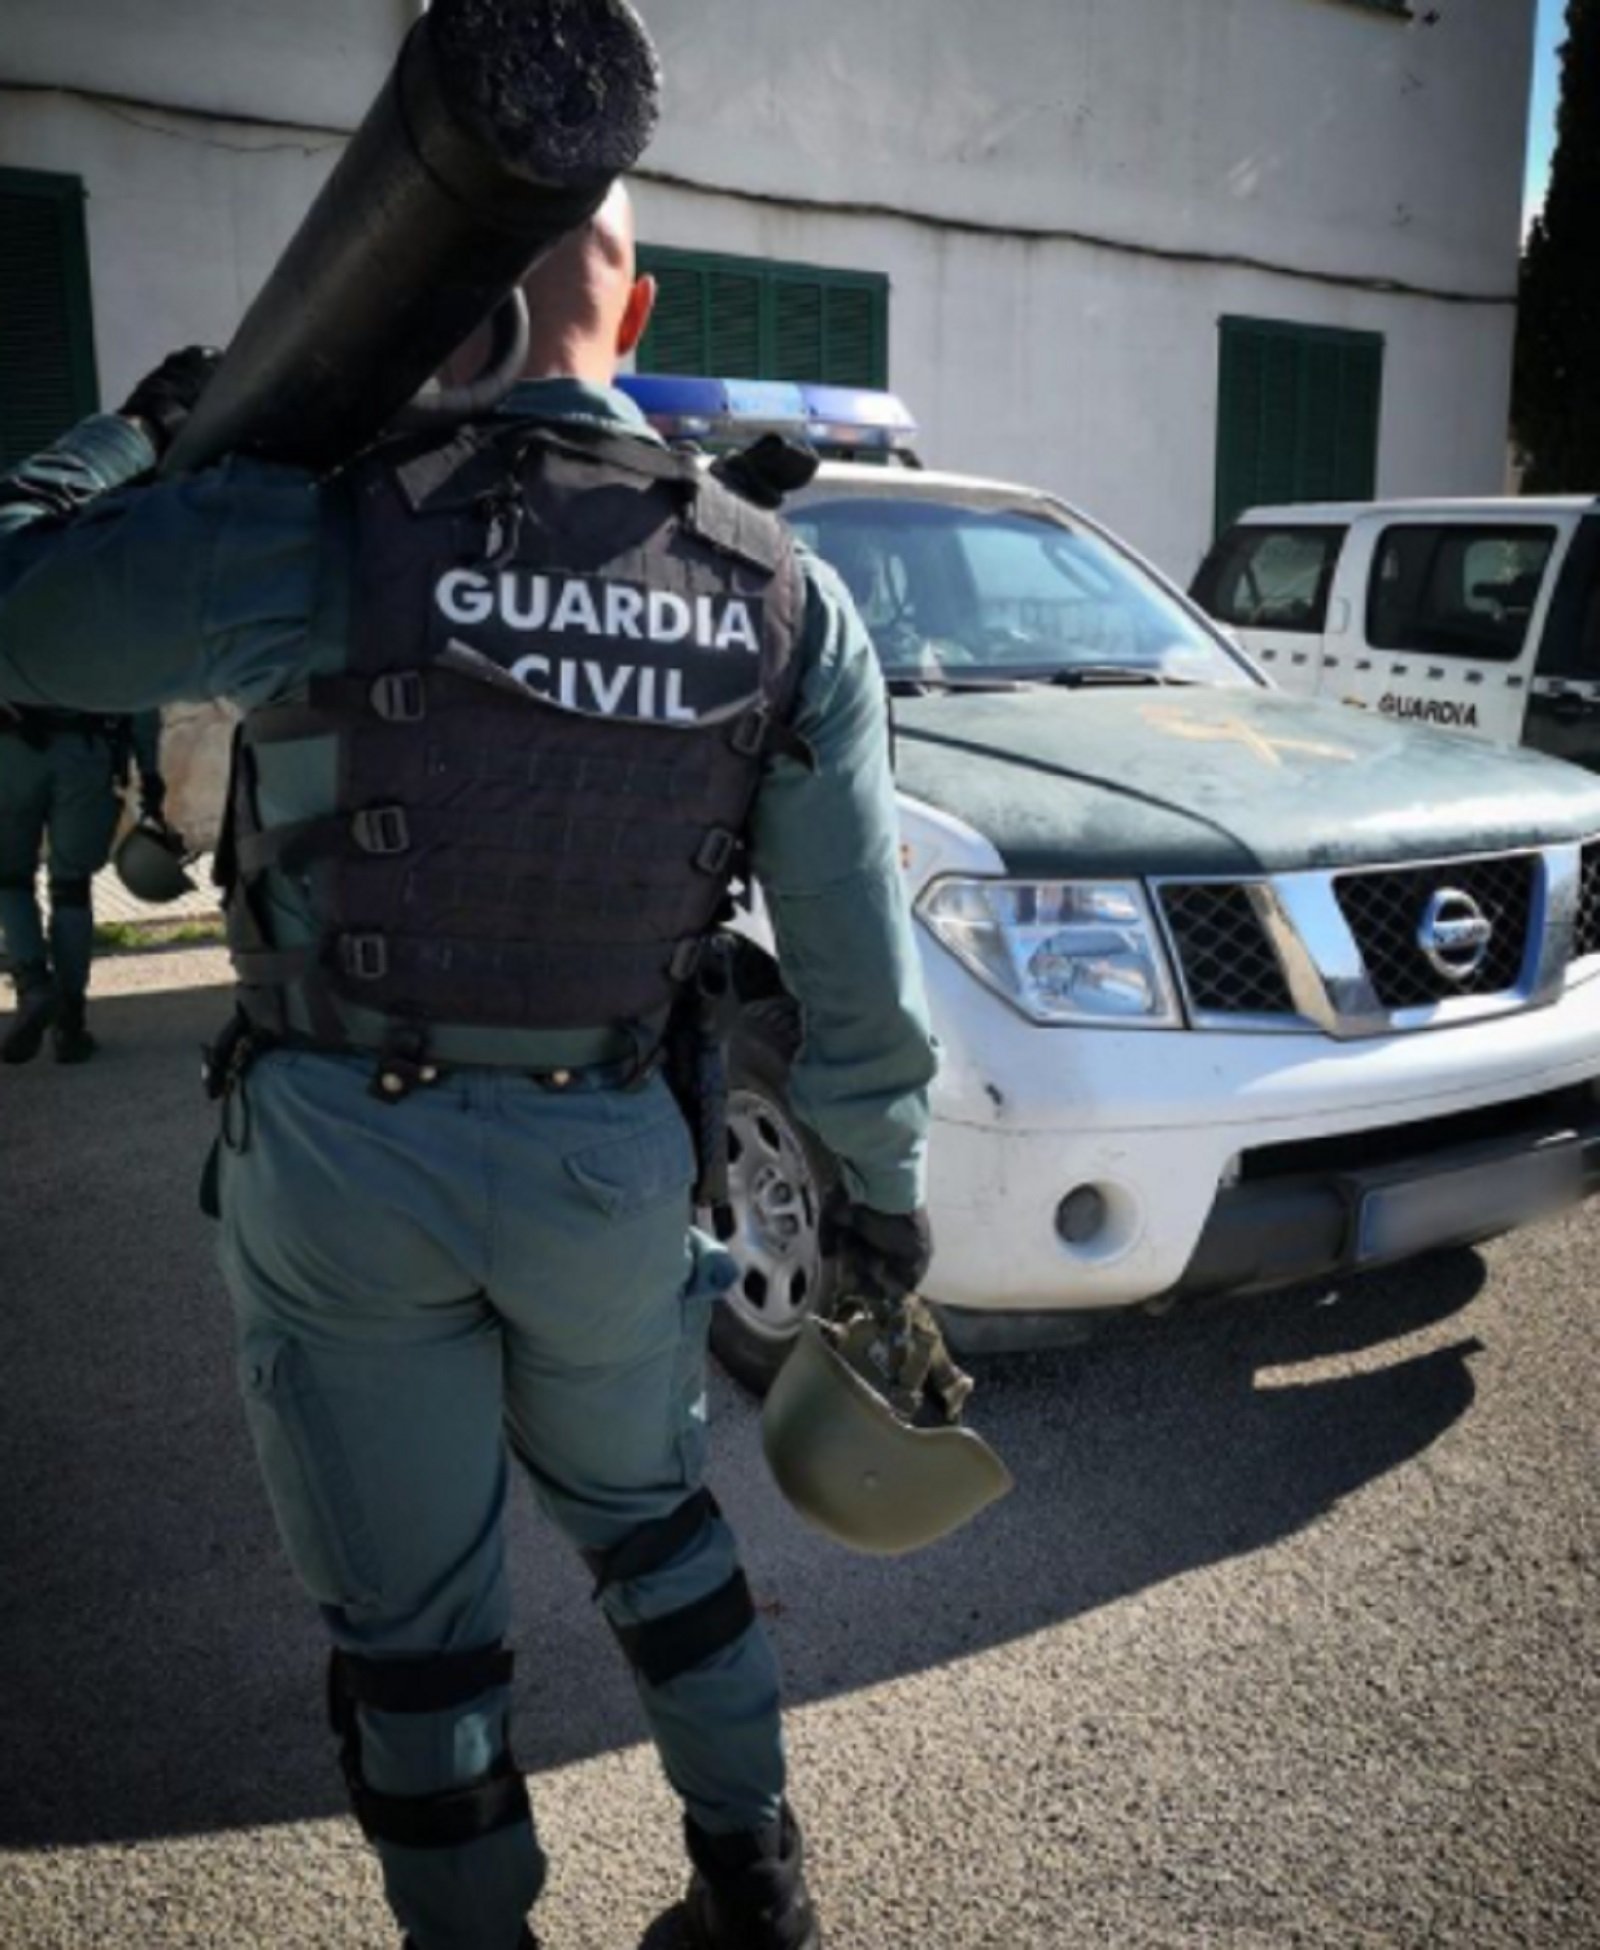 Un guardia civil increpa a un ciudadano por hablar catalán: "Maleducado"